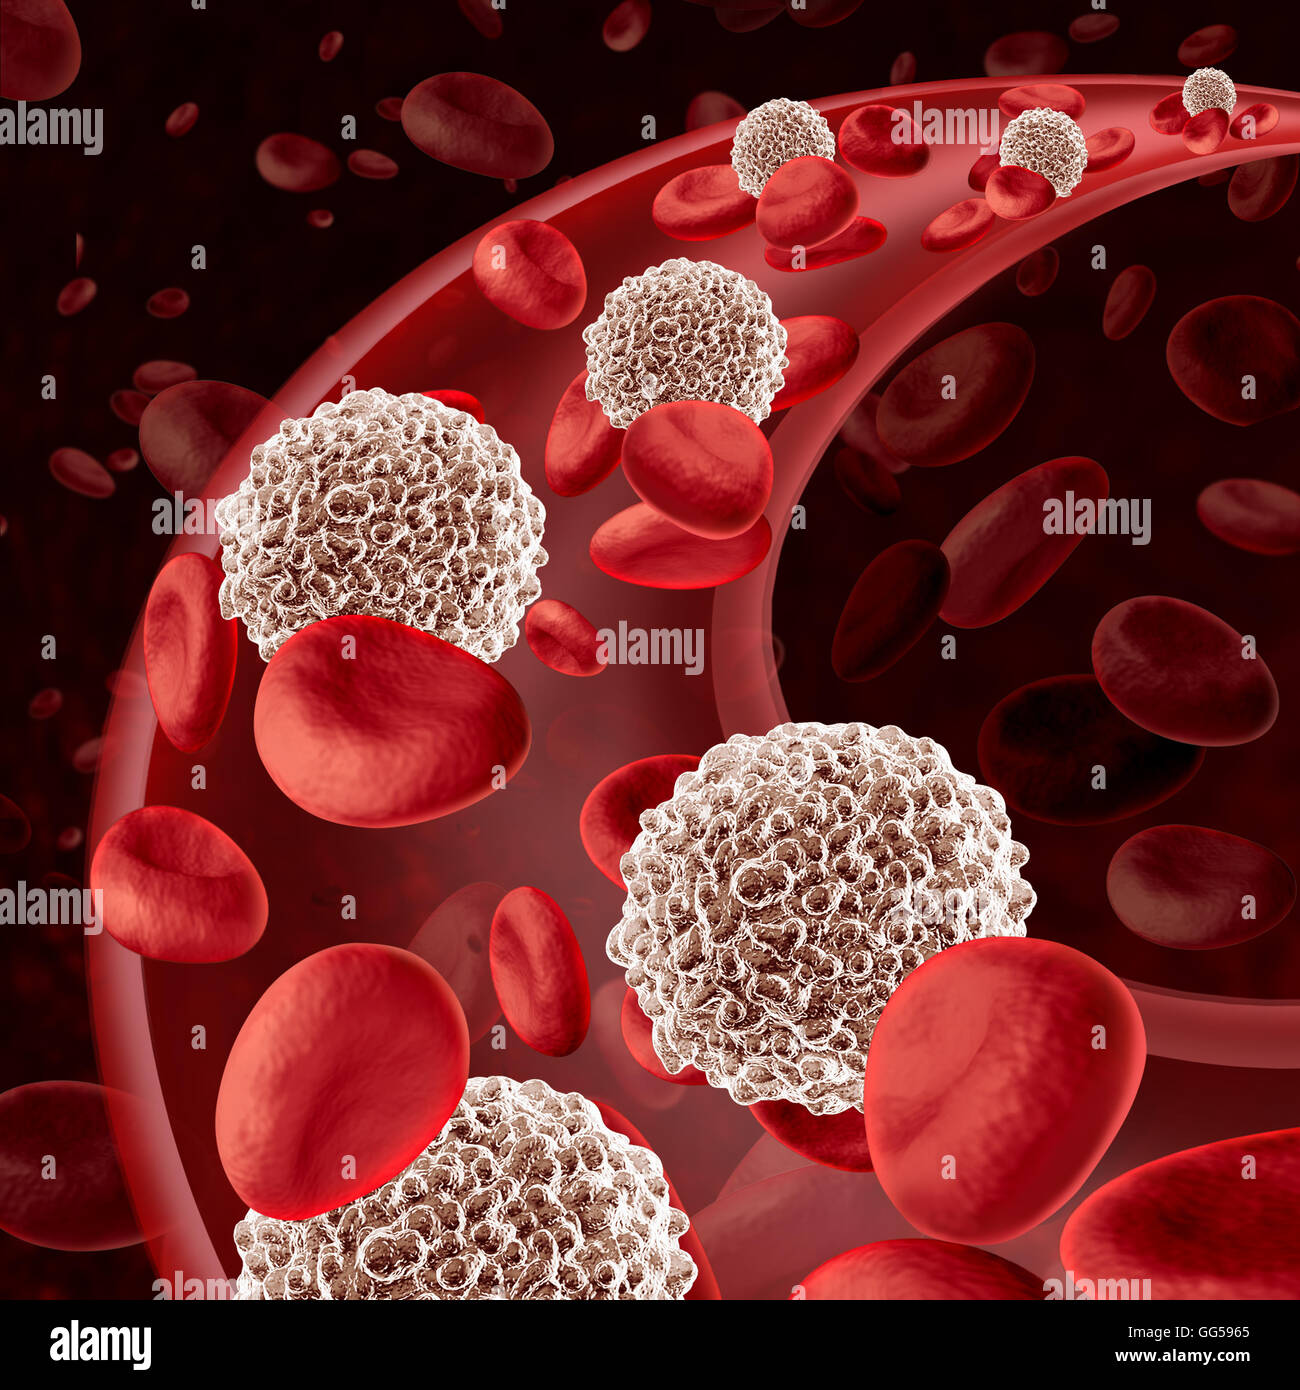 La circulación de células blancas de la sangre que fluye a través de la Microbiología como un símbolo de defensa del sistema inmunológico humano combatir las infecciones defender y proteger el cuerpo humano de las enfermedades infecciosas como una ilustración 3D. Foto de stock